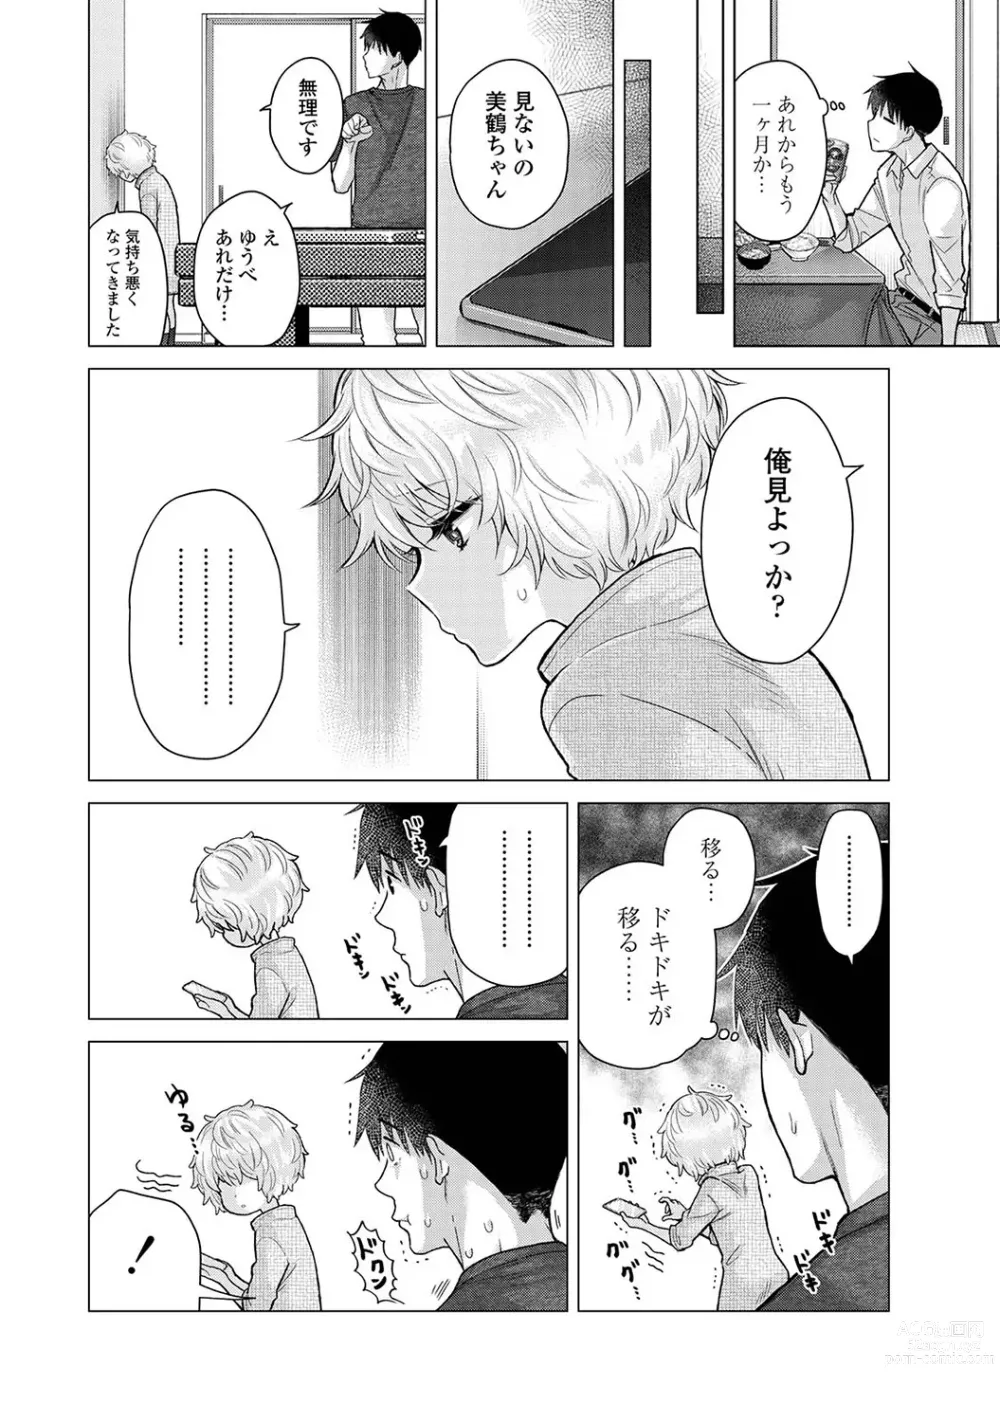 Page 8 of manga COMIC Ananga-Ranga Vol 102